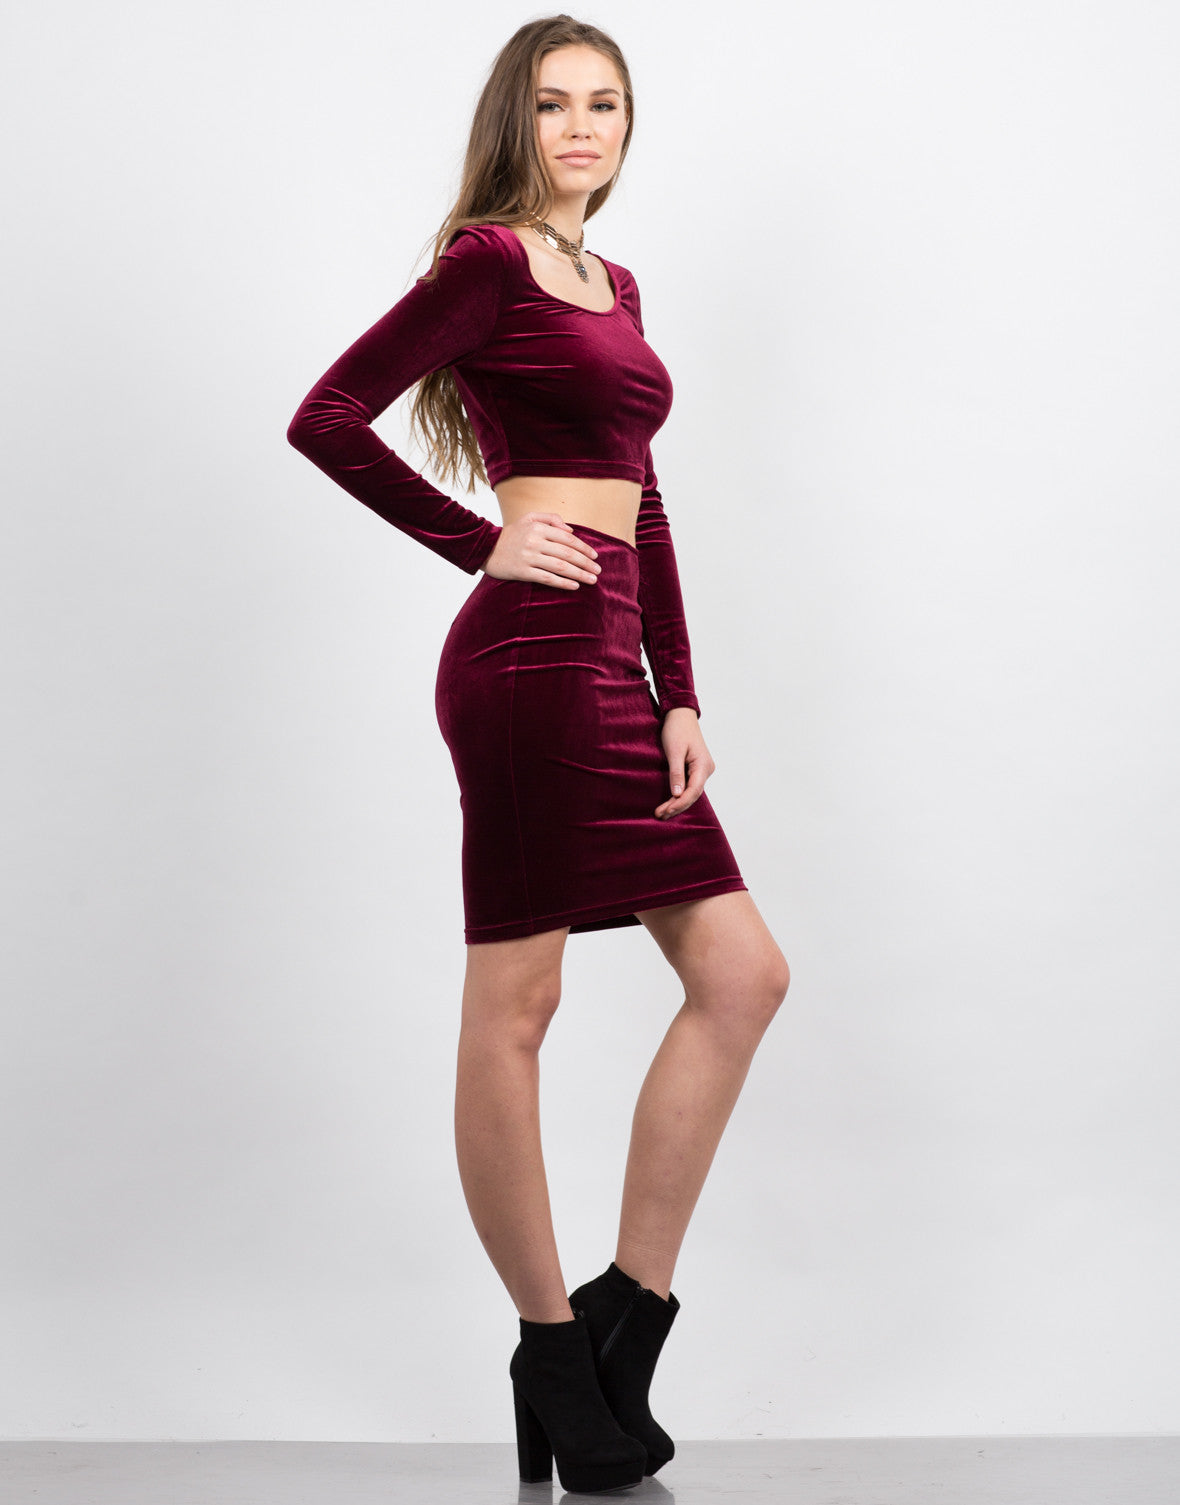 Velvet Bodycon Skirt Pencil Skirt Matching Sets 2020ave